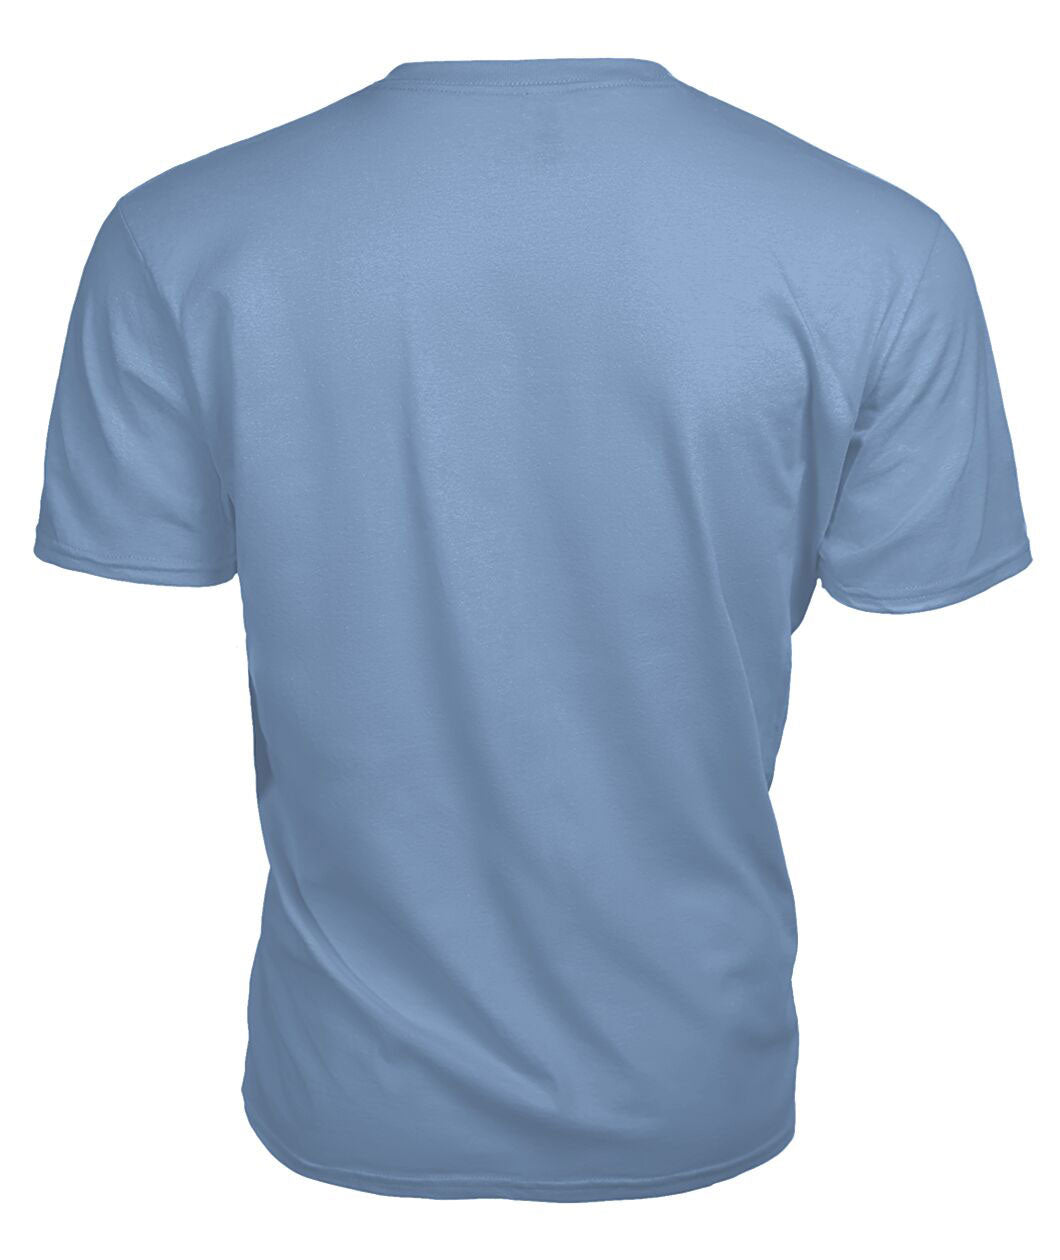 Durie Tartan Crest 2D T-shirt - Blood Runs Through My Veins Style